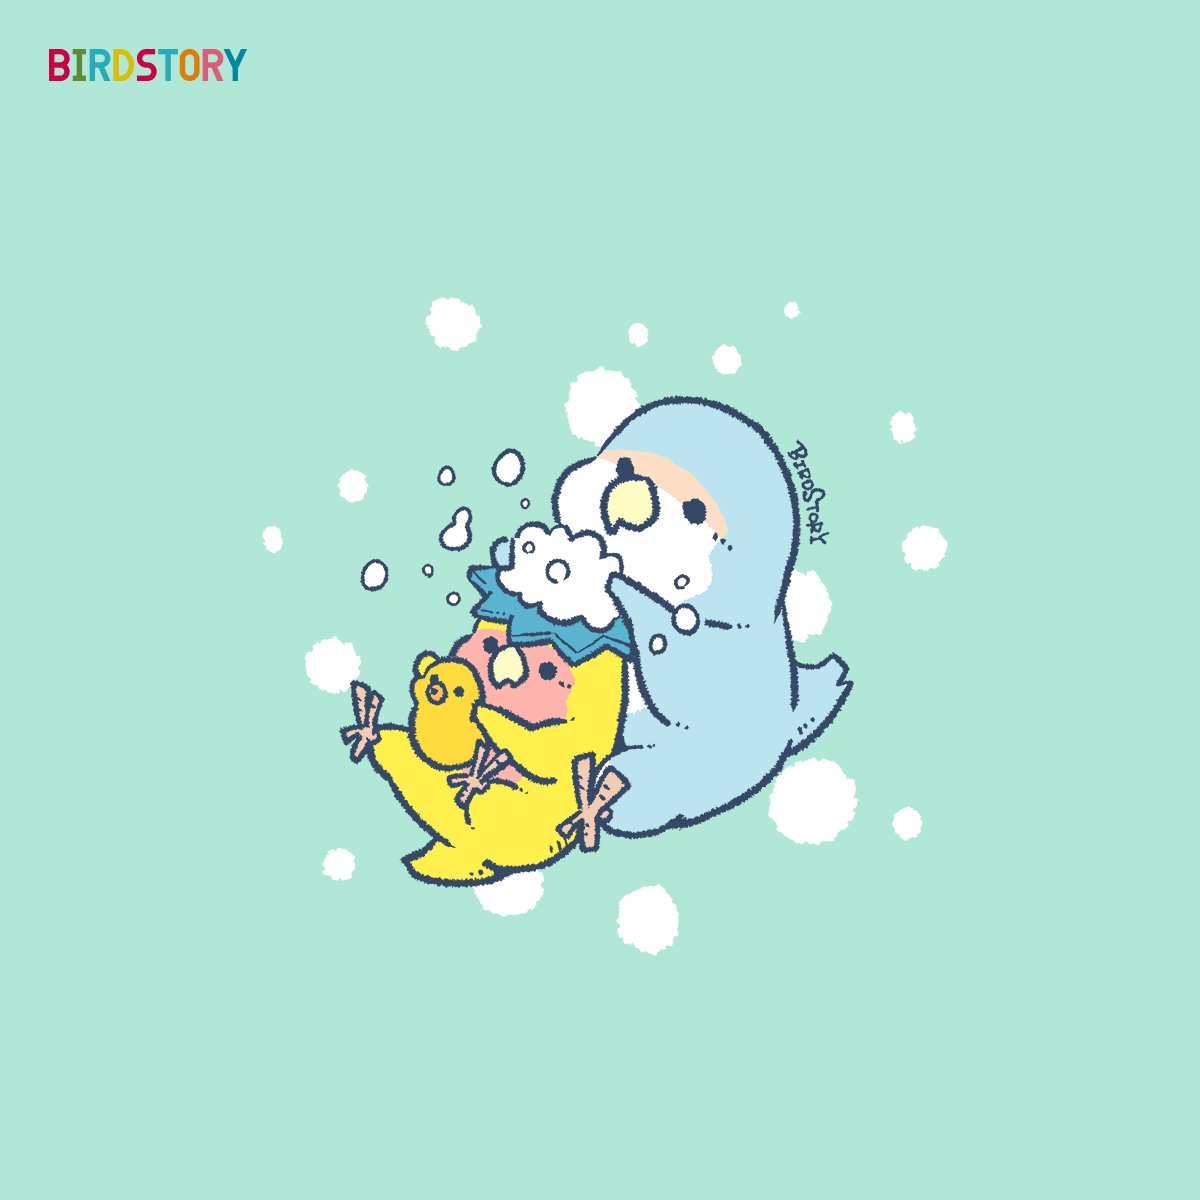 「おはようございます。本日は3月26日、語呂合わせから、風呂の日とのことです#BI」|BIRDSTORYのイラスト